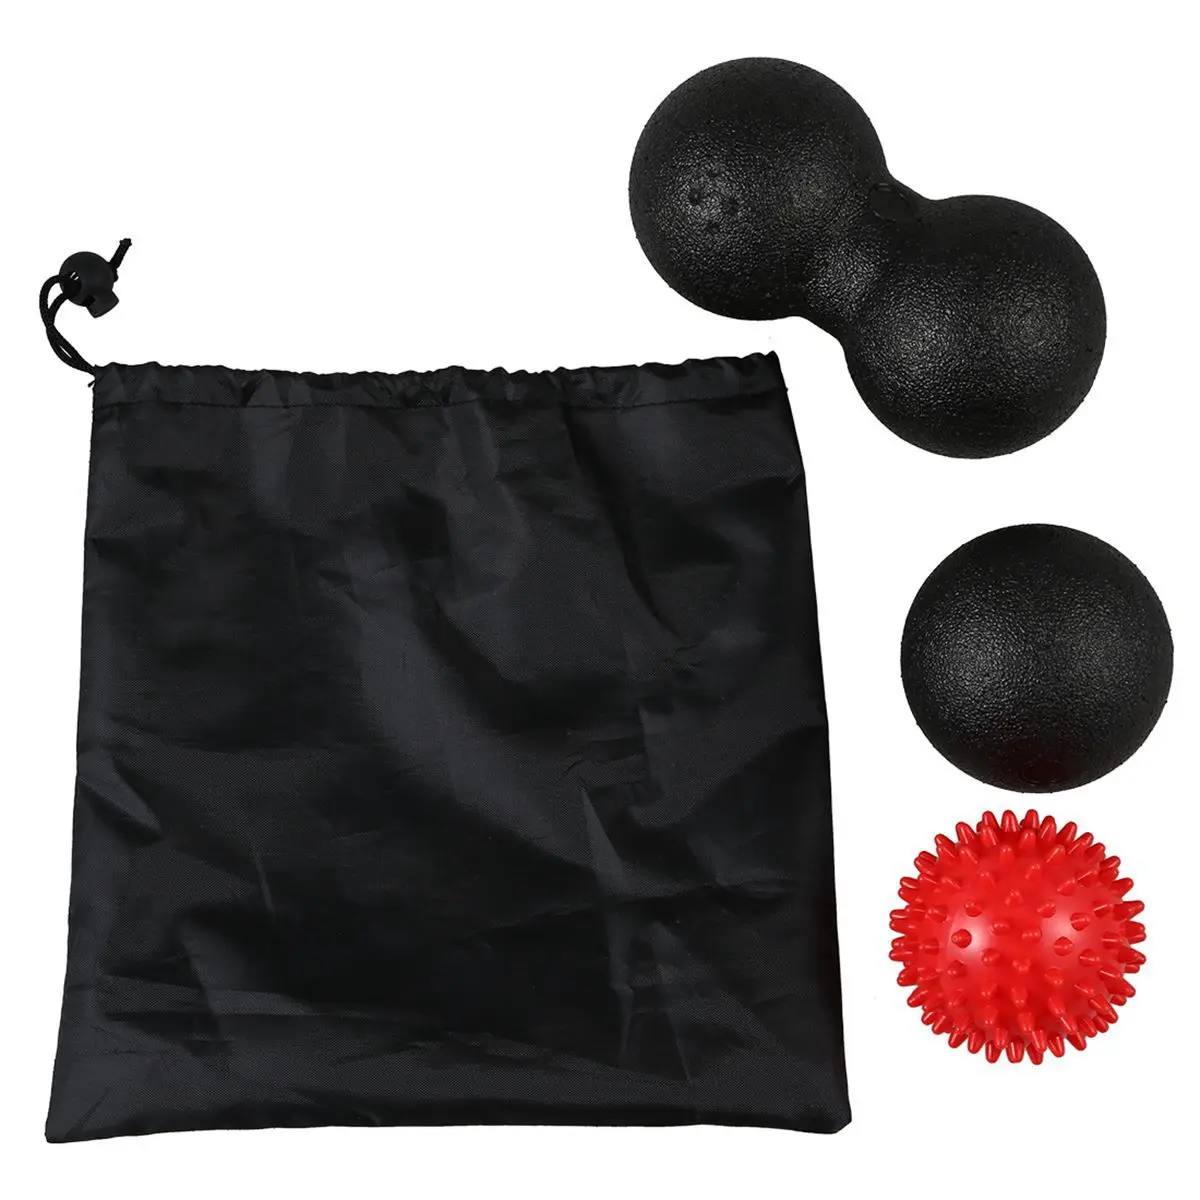 Массажный мяч набор 1 Лакросса мяч+ 1 двойной, для Лакросса мяч+ 1 шиповый шар для Акупунктура-релиз для тренировки мышц